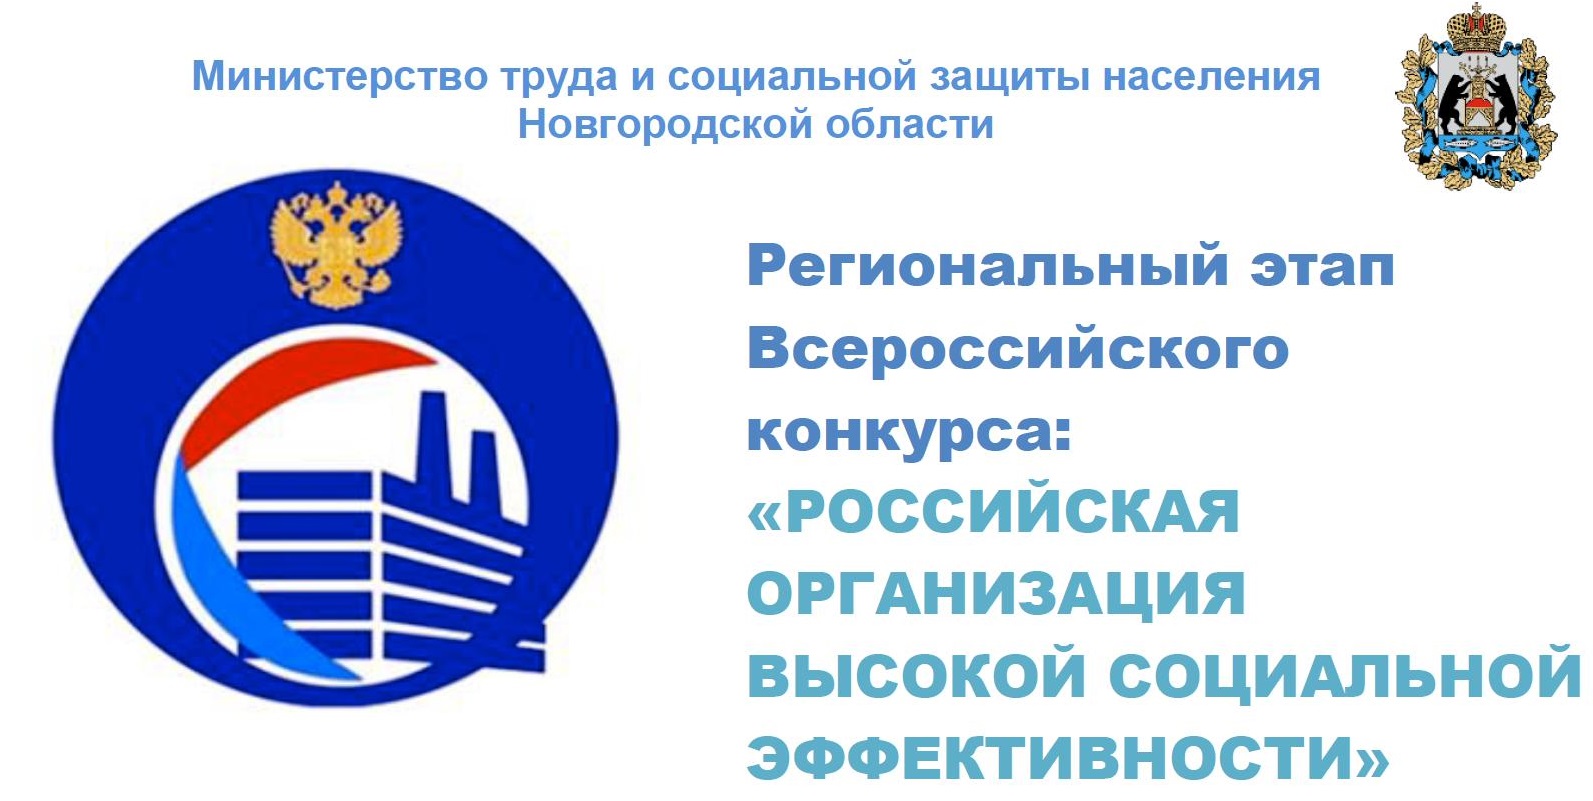 Региональный этап Всероссийского конкурса «Российская организация высокой социальной эффективности».